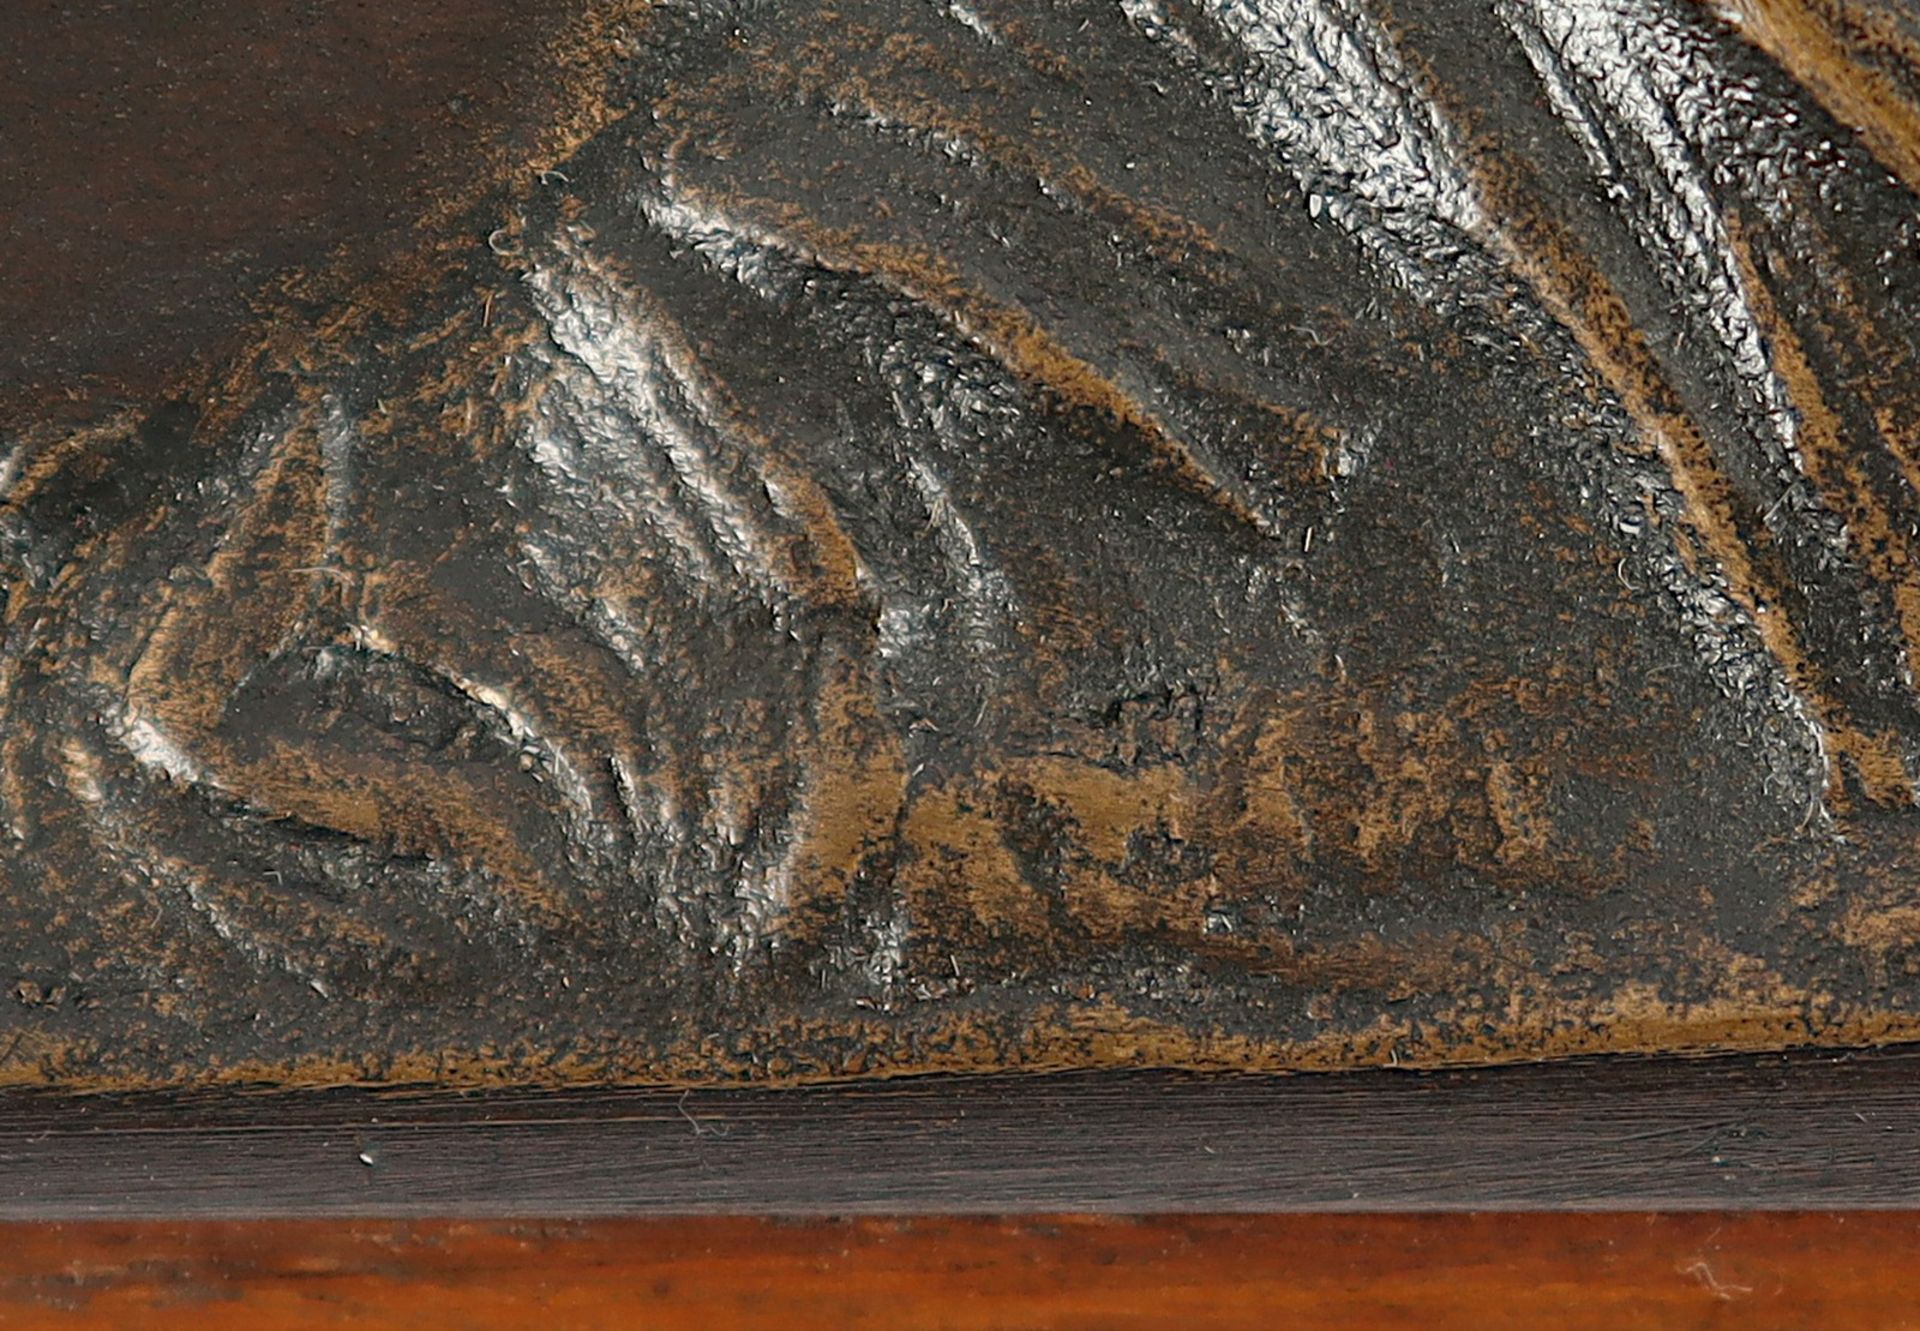 RELIEFPLATTE, liegender männlicher Akt, Bronze, auf Holz montiert, 18,5 x 29, unleserlich signiert, - Bild 2 aus 2